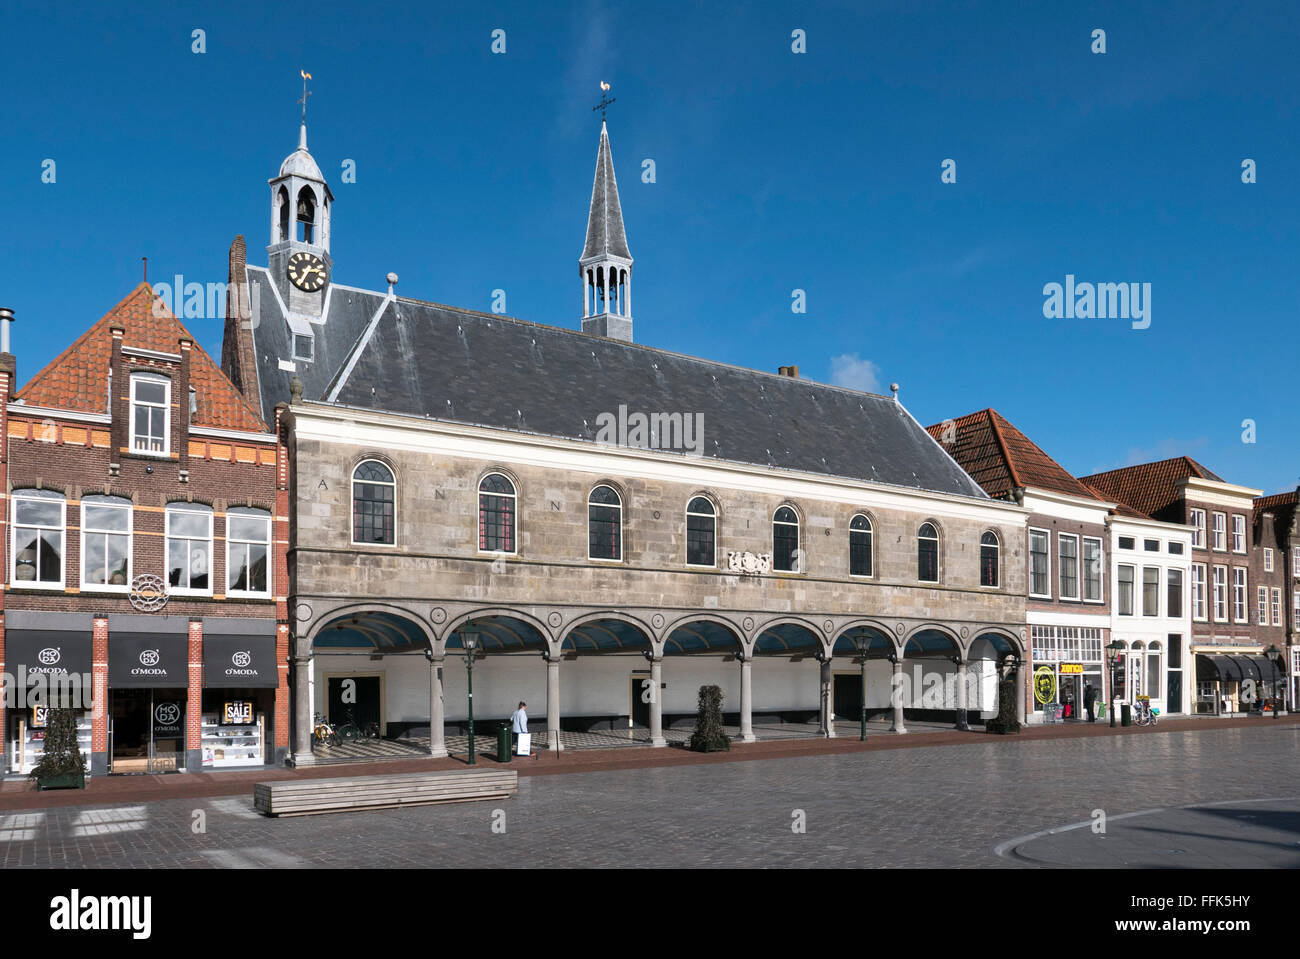 Gasthuiskerk am Havenplein, Zierikzee, Provinz Seeland, Niederlande | Gasthuiskerk on Havenplein, Zierikzee, Zeeland, Netherland Stock Photo